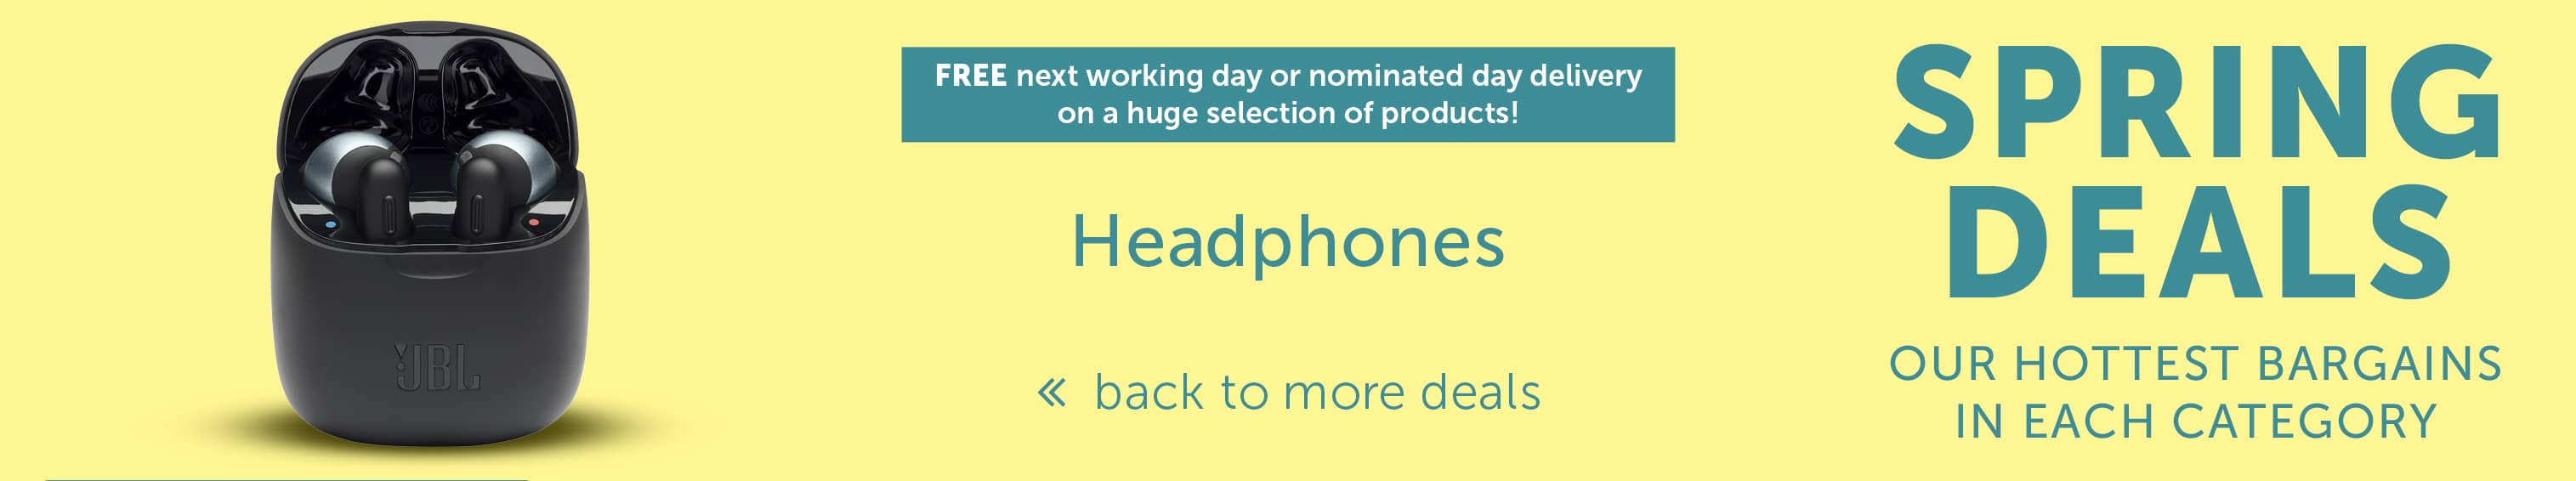 Spring Deals - Headphones